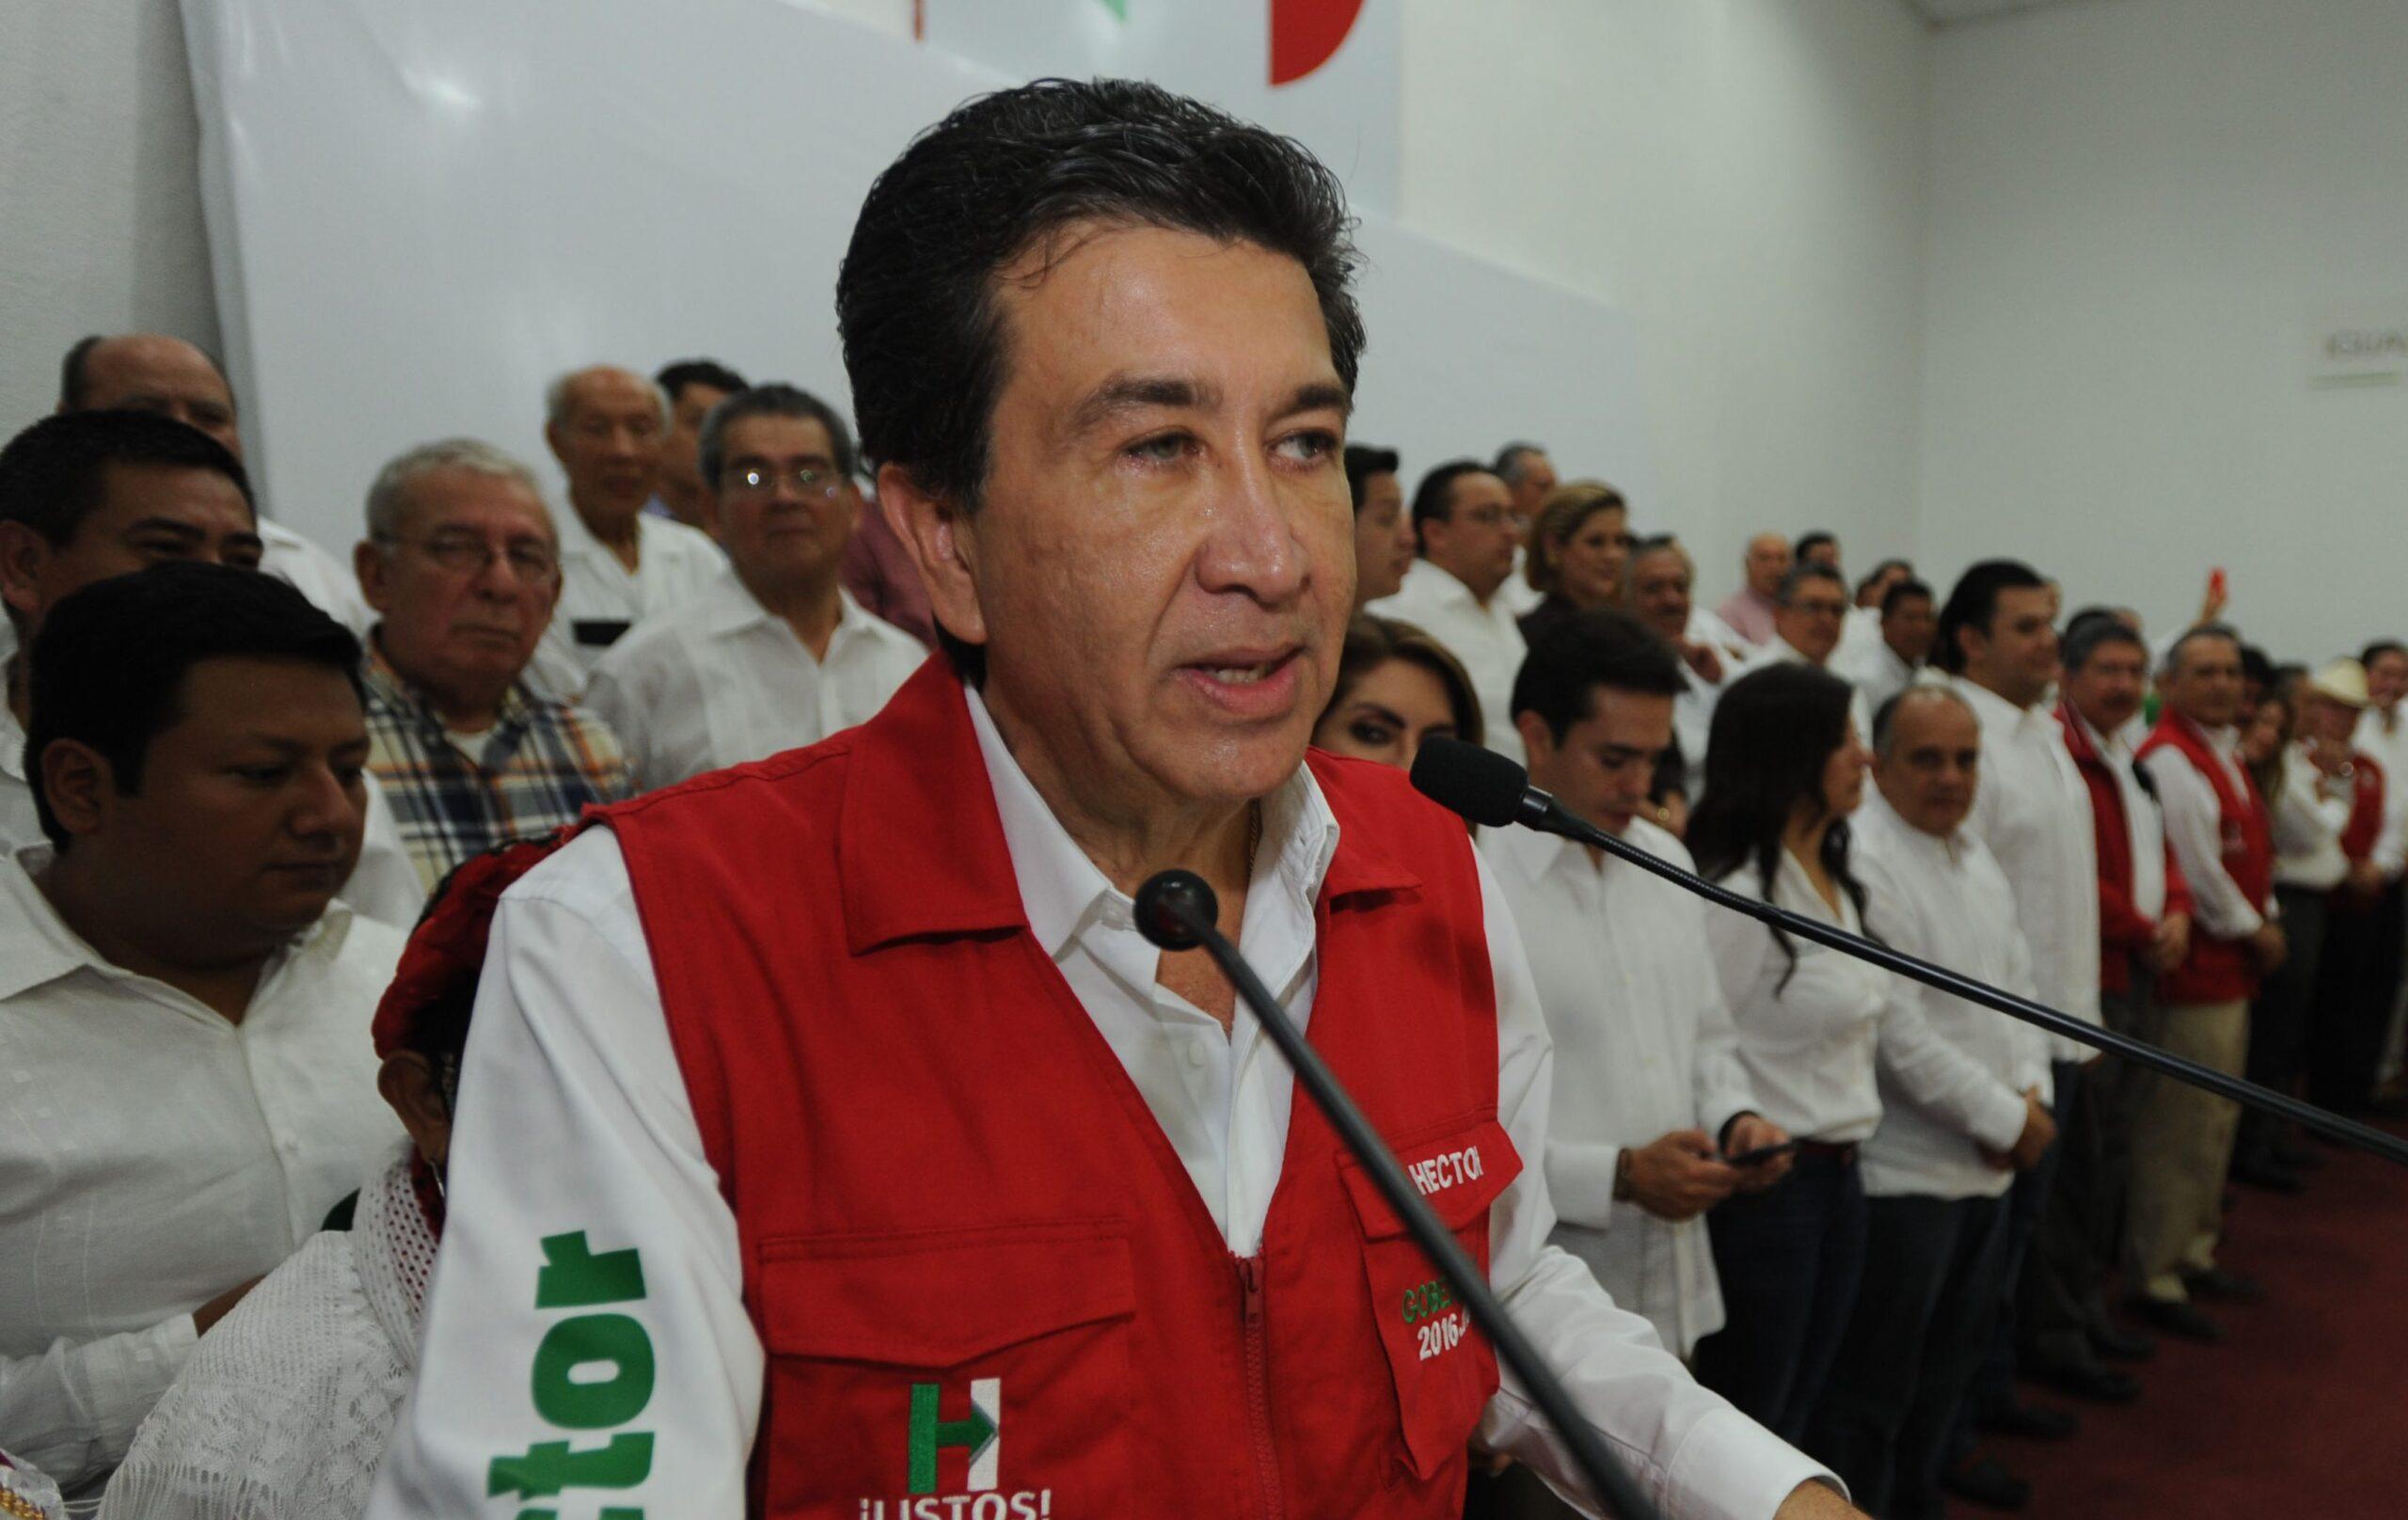 La red de empresas fantasma en Veracruz hace cuestionamientos serios al gobierno de Duarte, dice Héctor Yunes